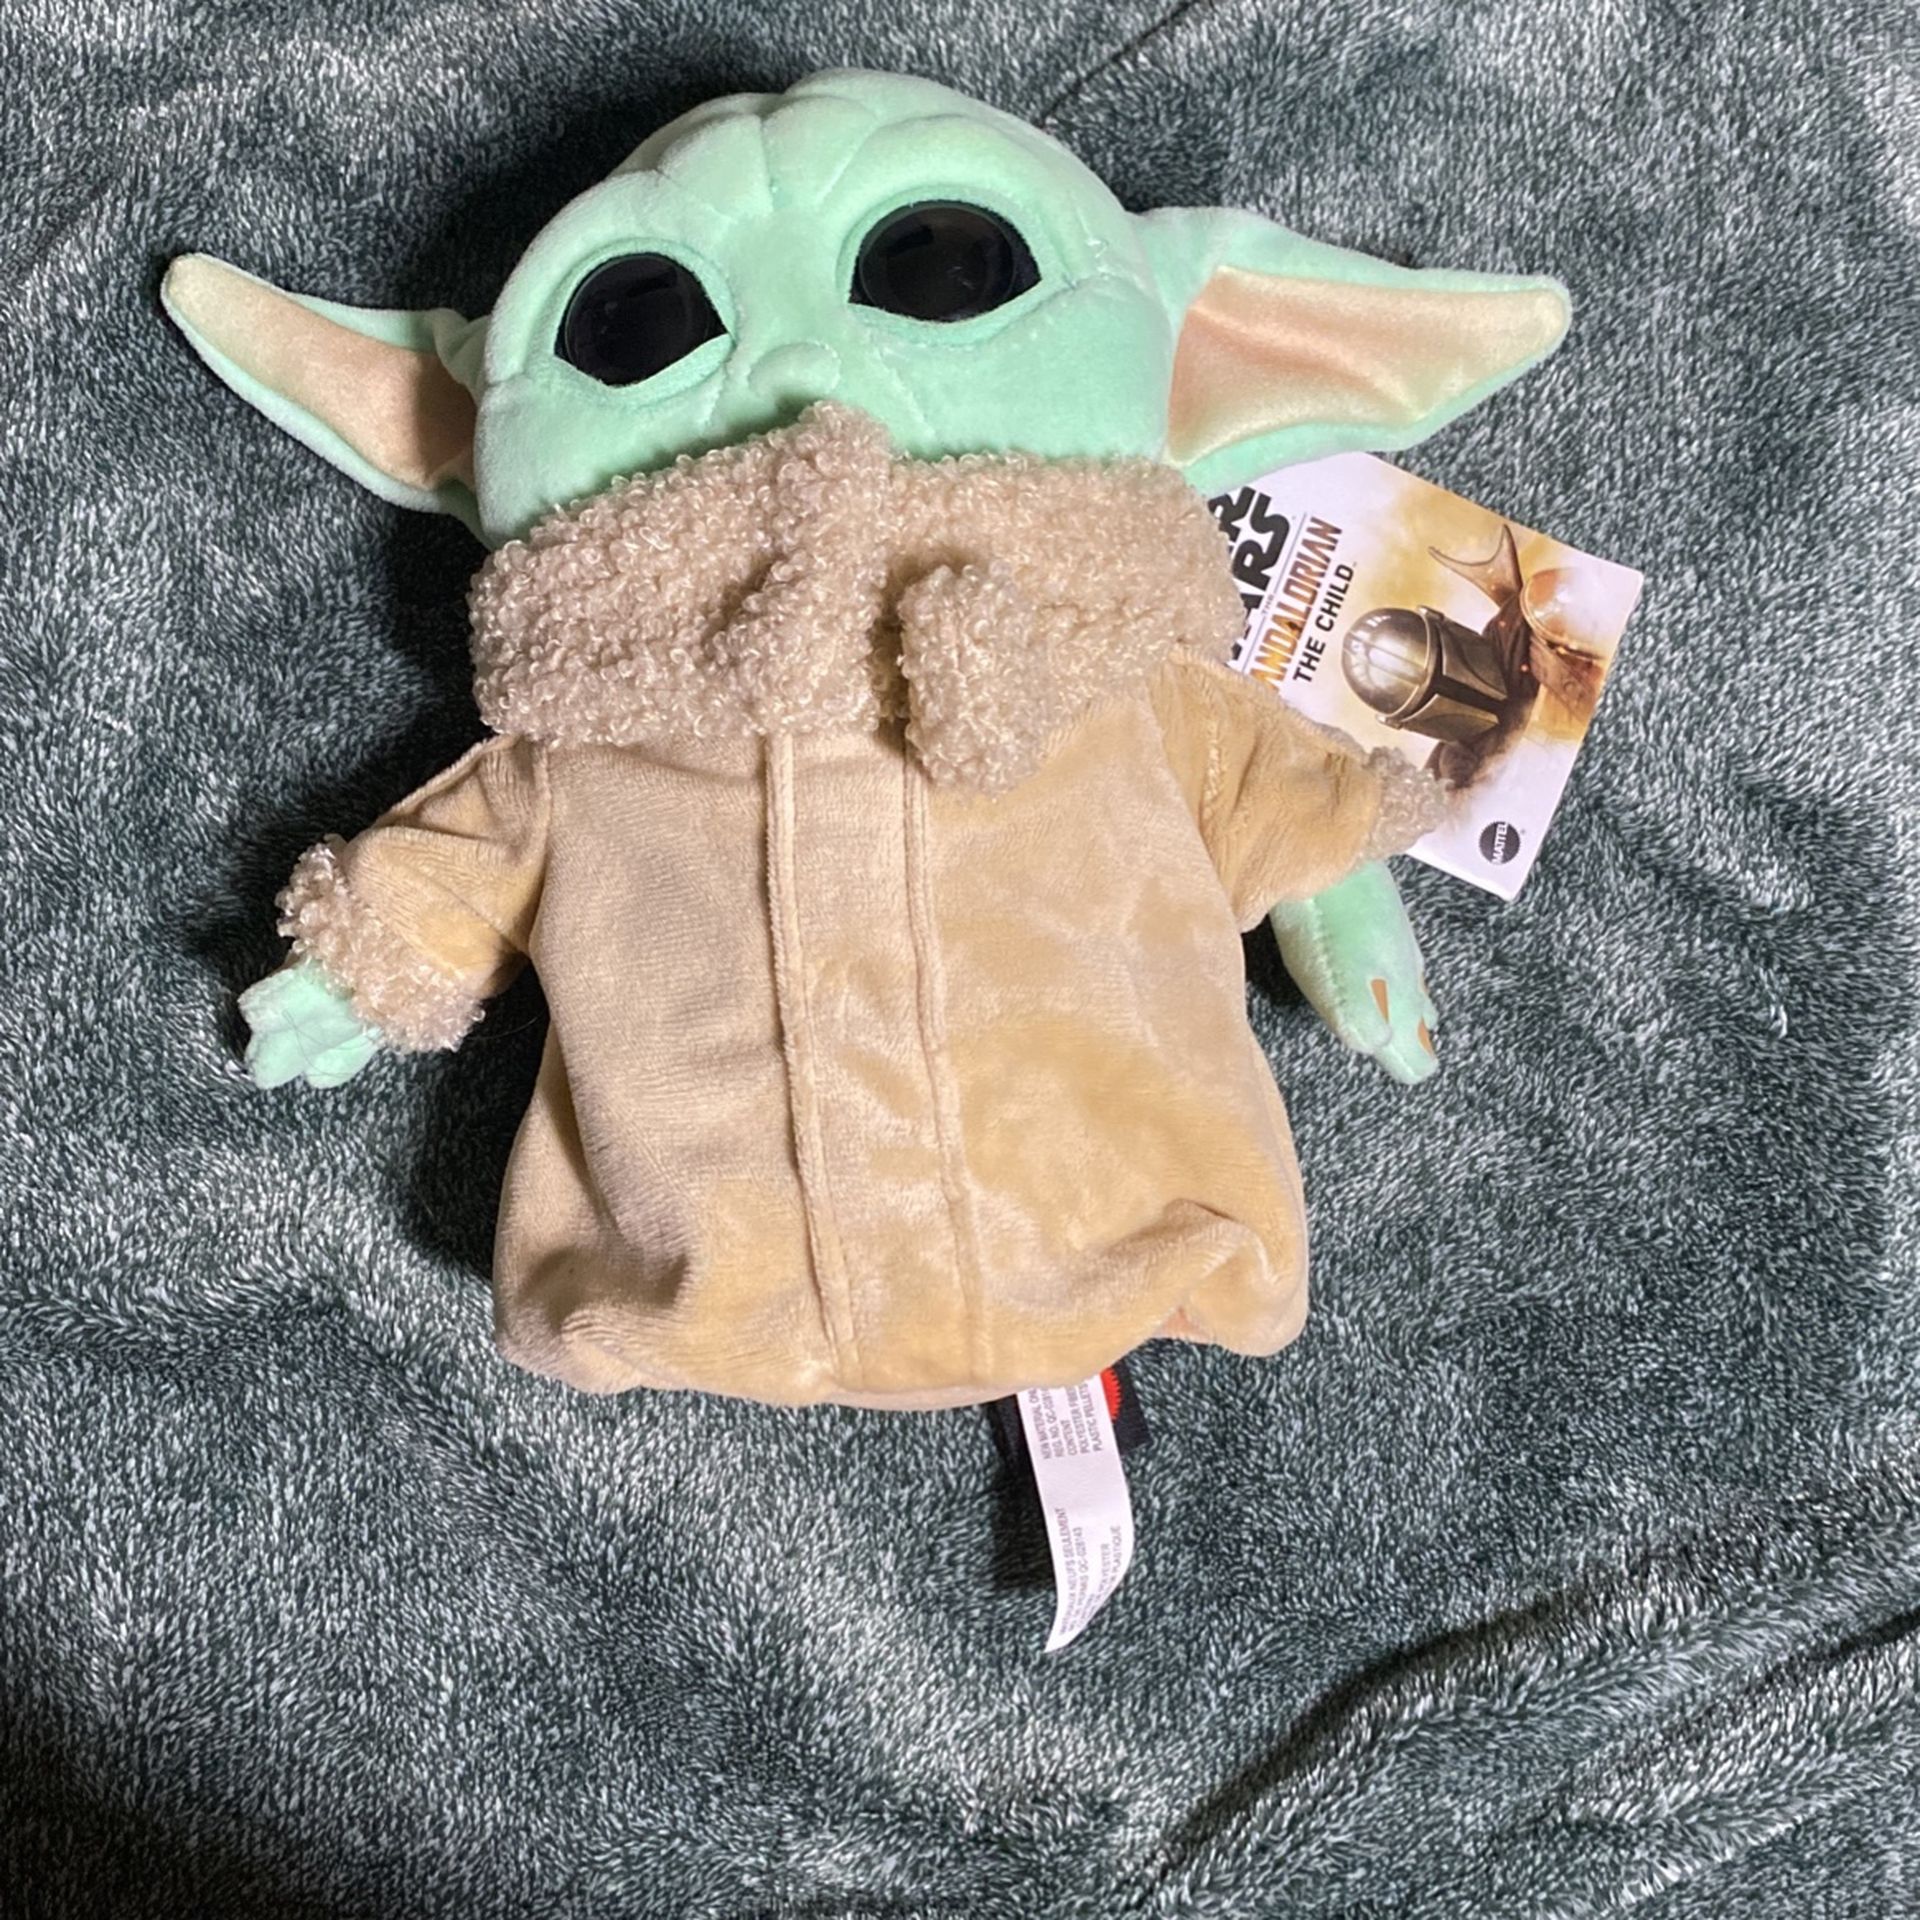 Baby Yoda Plushie